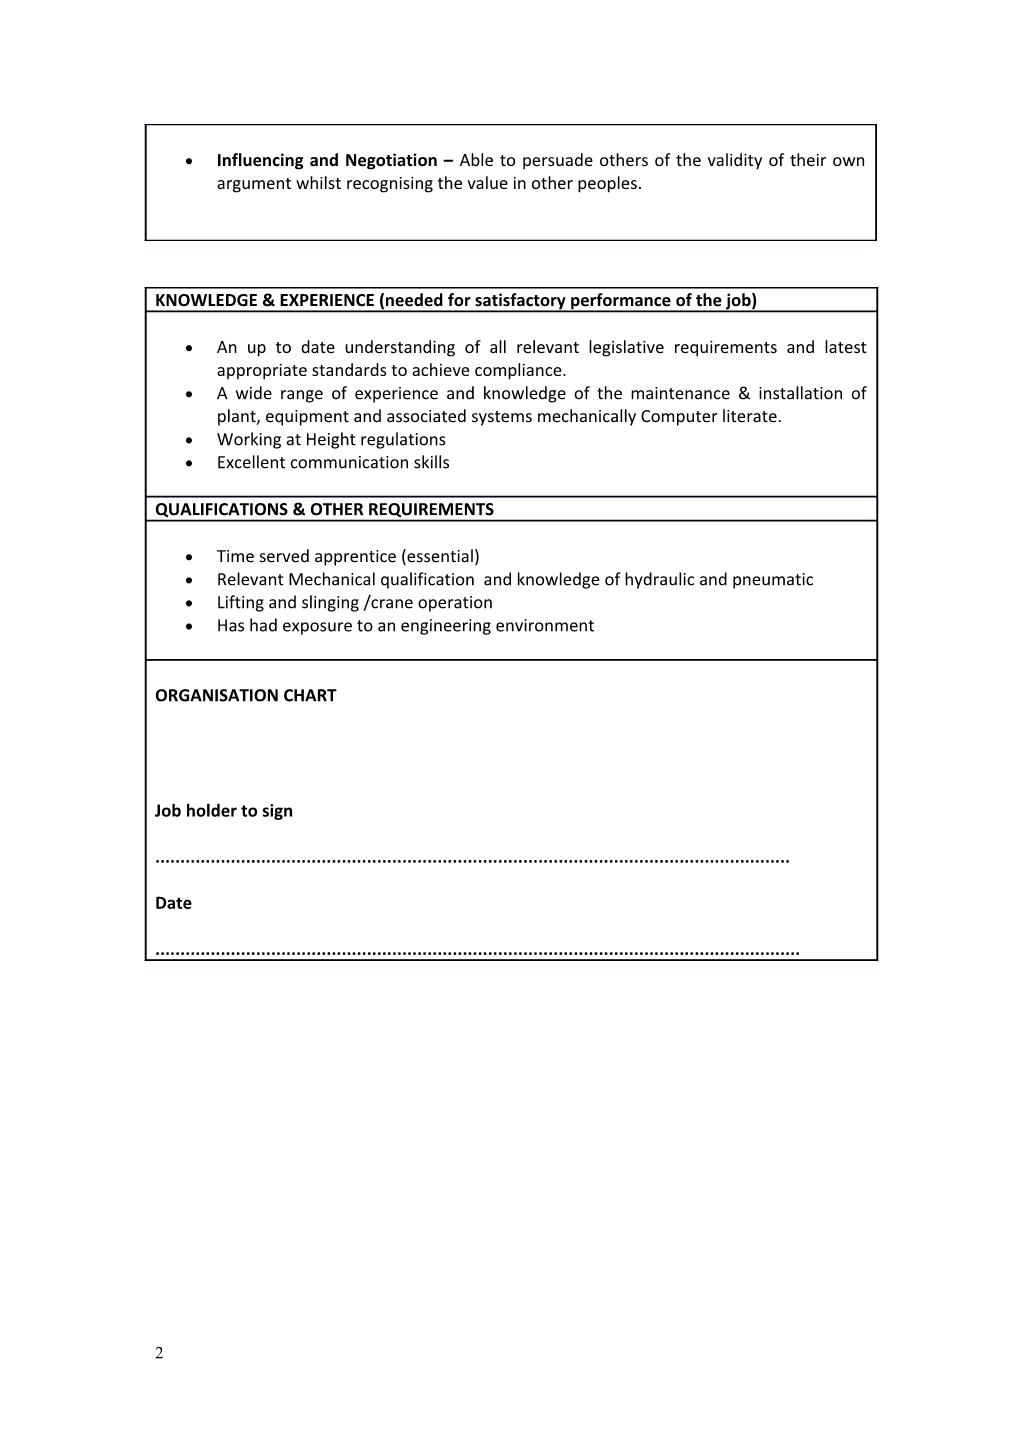 Job Description Form s15